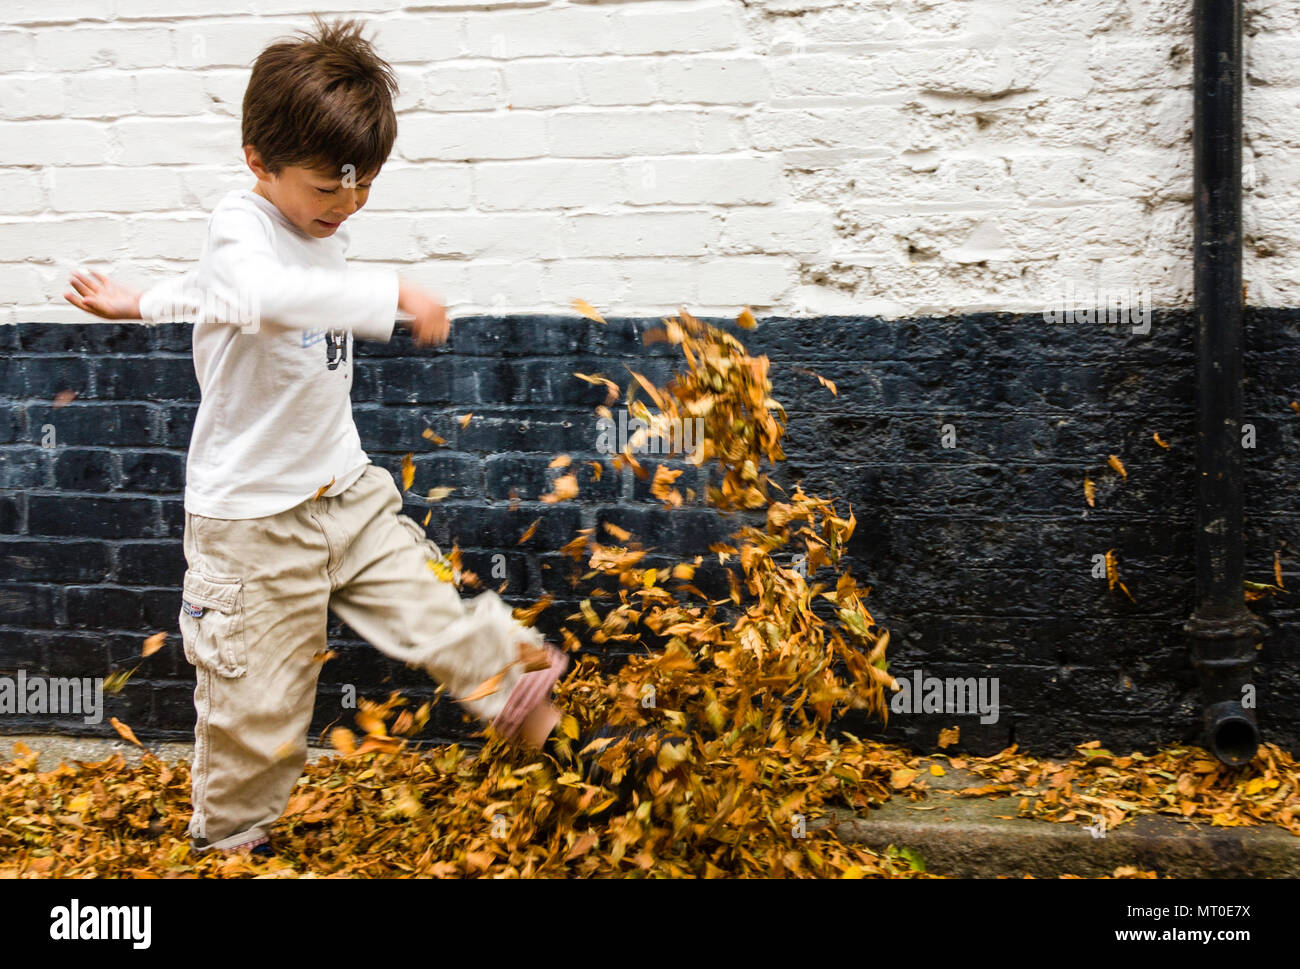 Caucasien enfant, garçon, 5-6 ans, marcher le long de la chaussée en noir et blanc mur, coups de feuilles d'automne dans l'air. Vue latérale. Banque D'Images